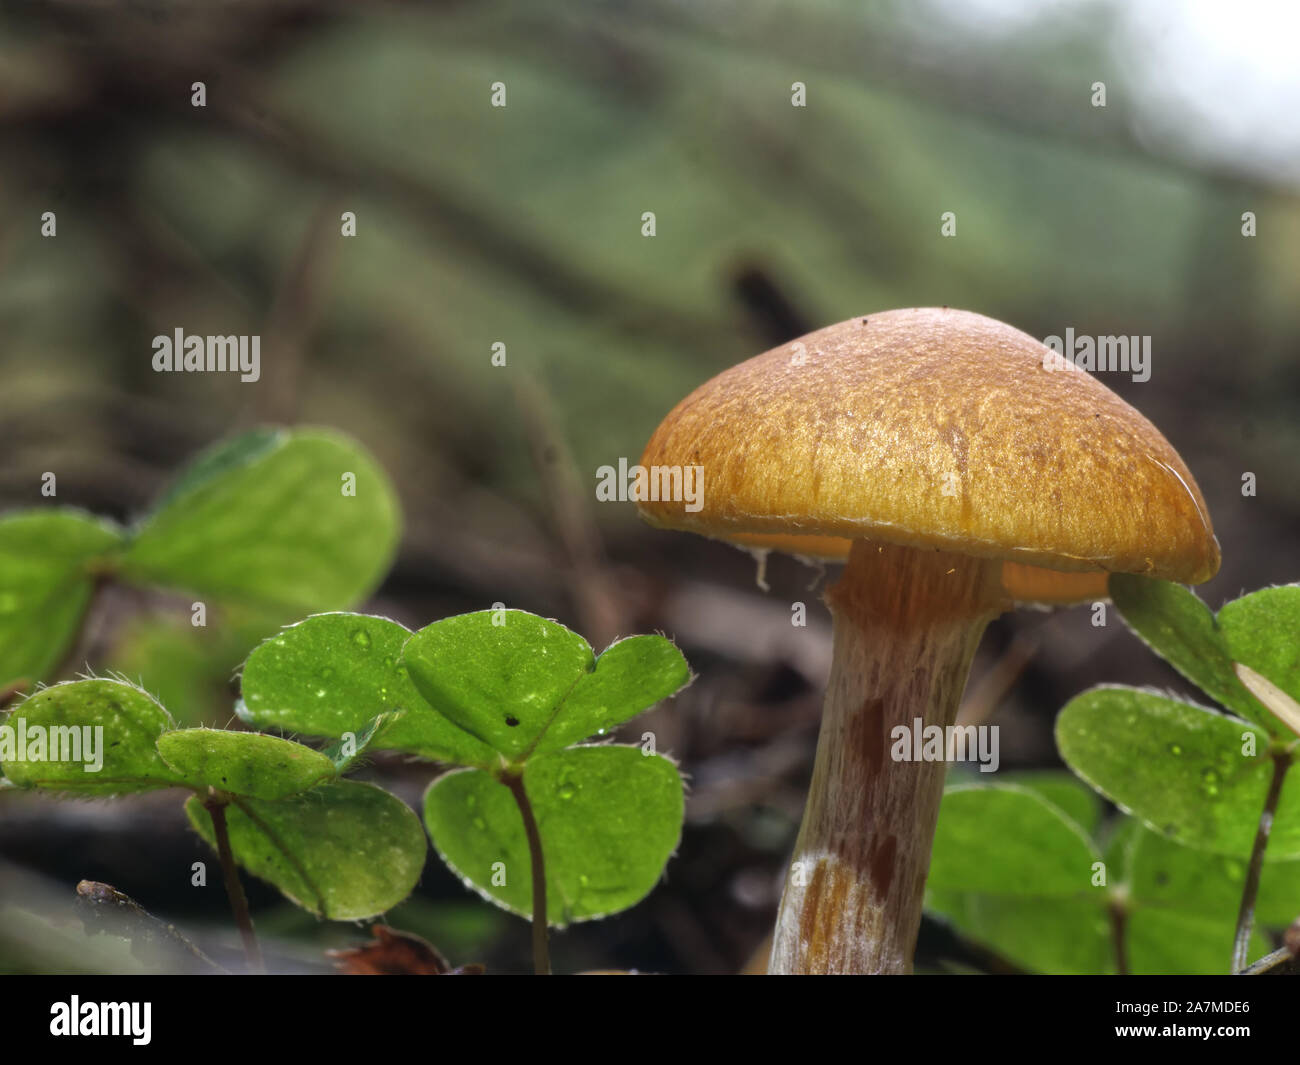 Tiny mushrooms Stock Photo